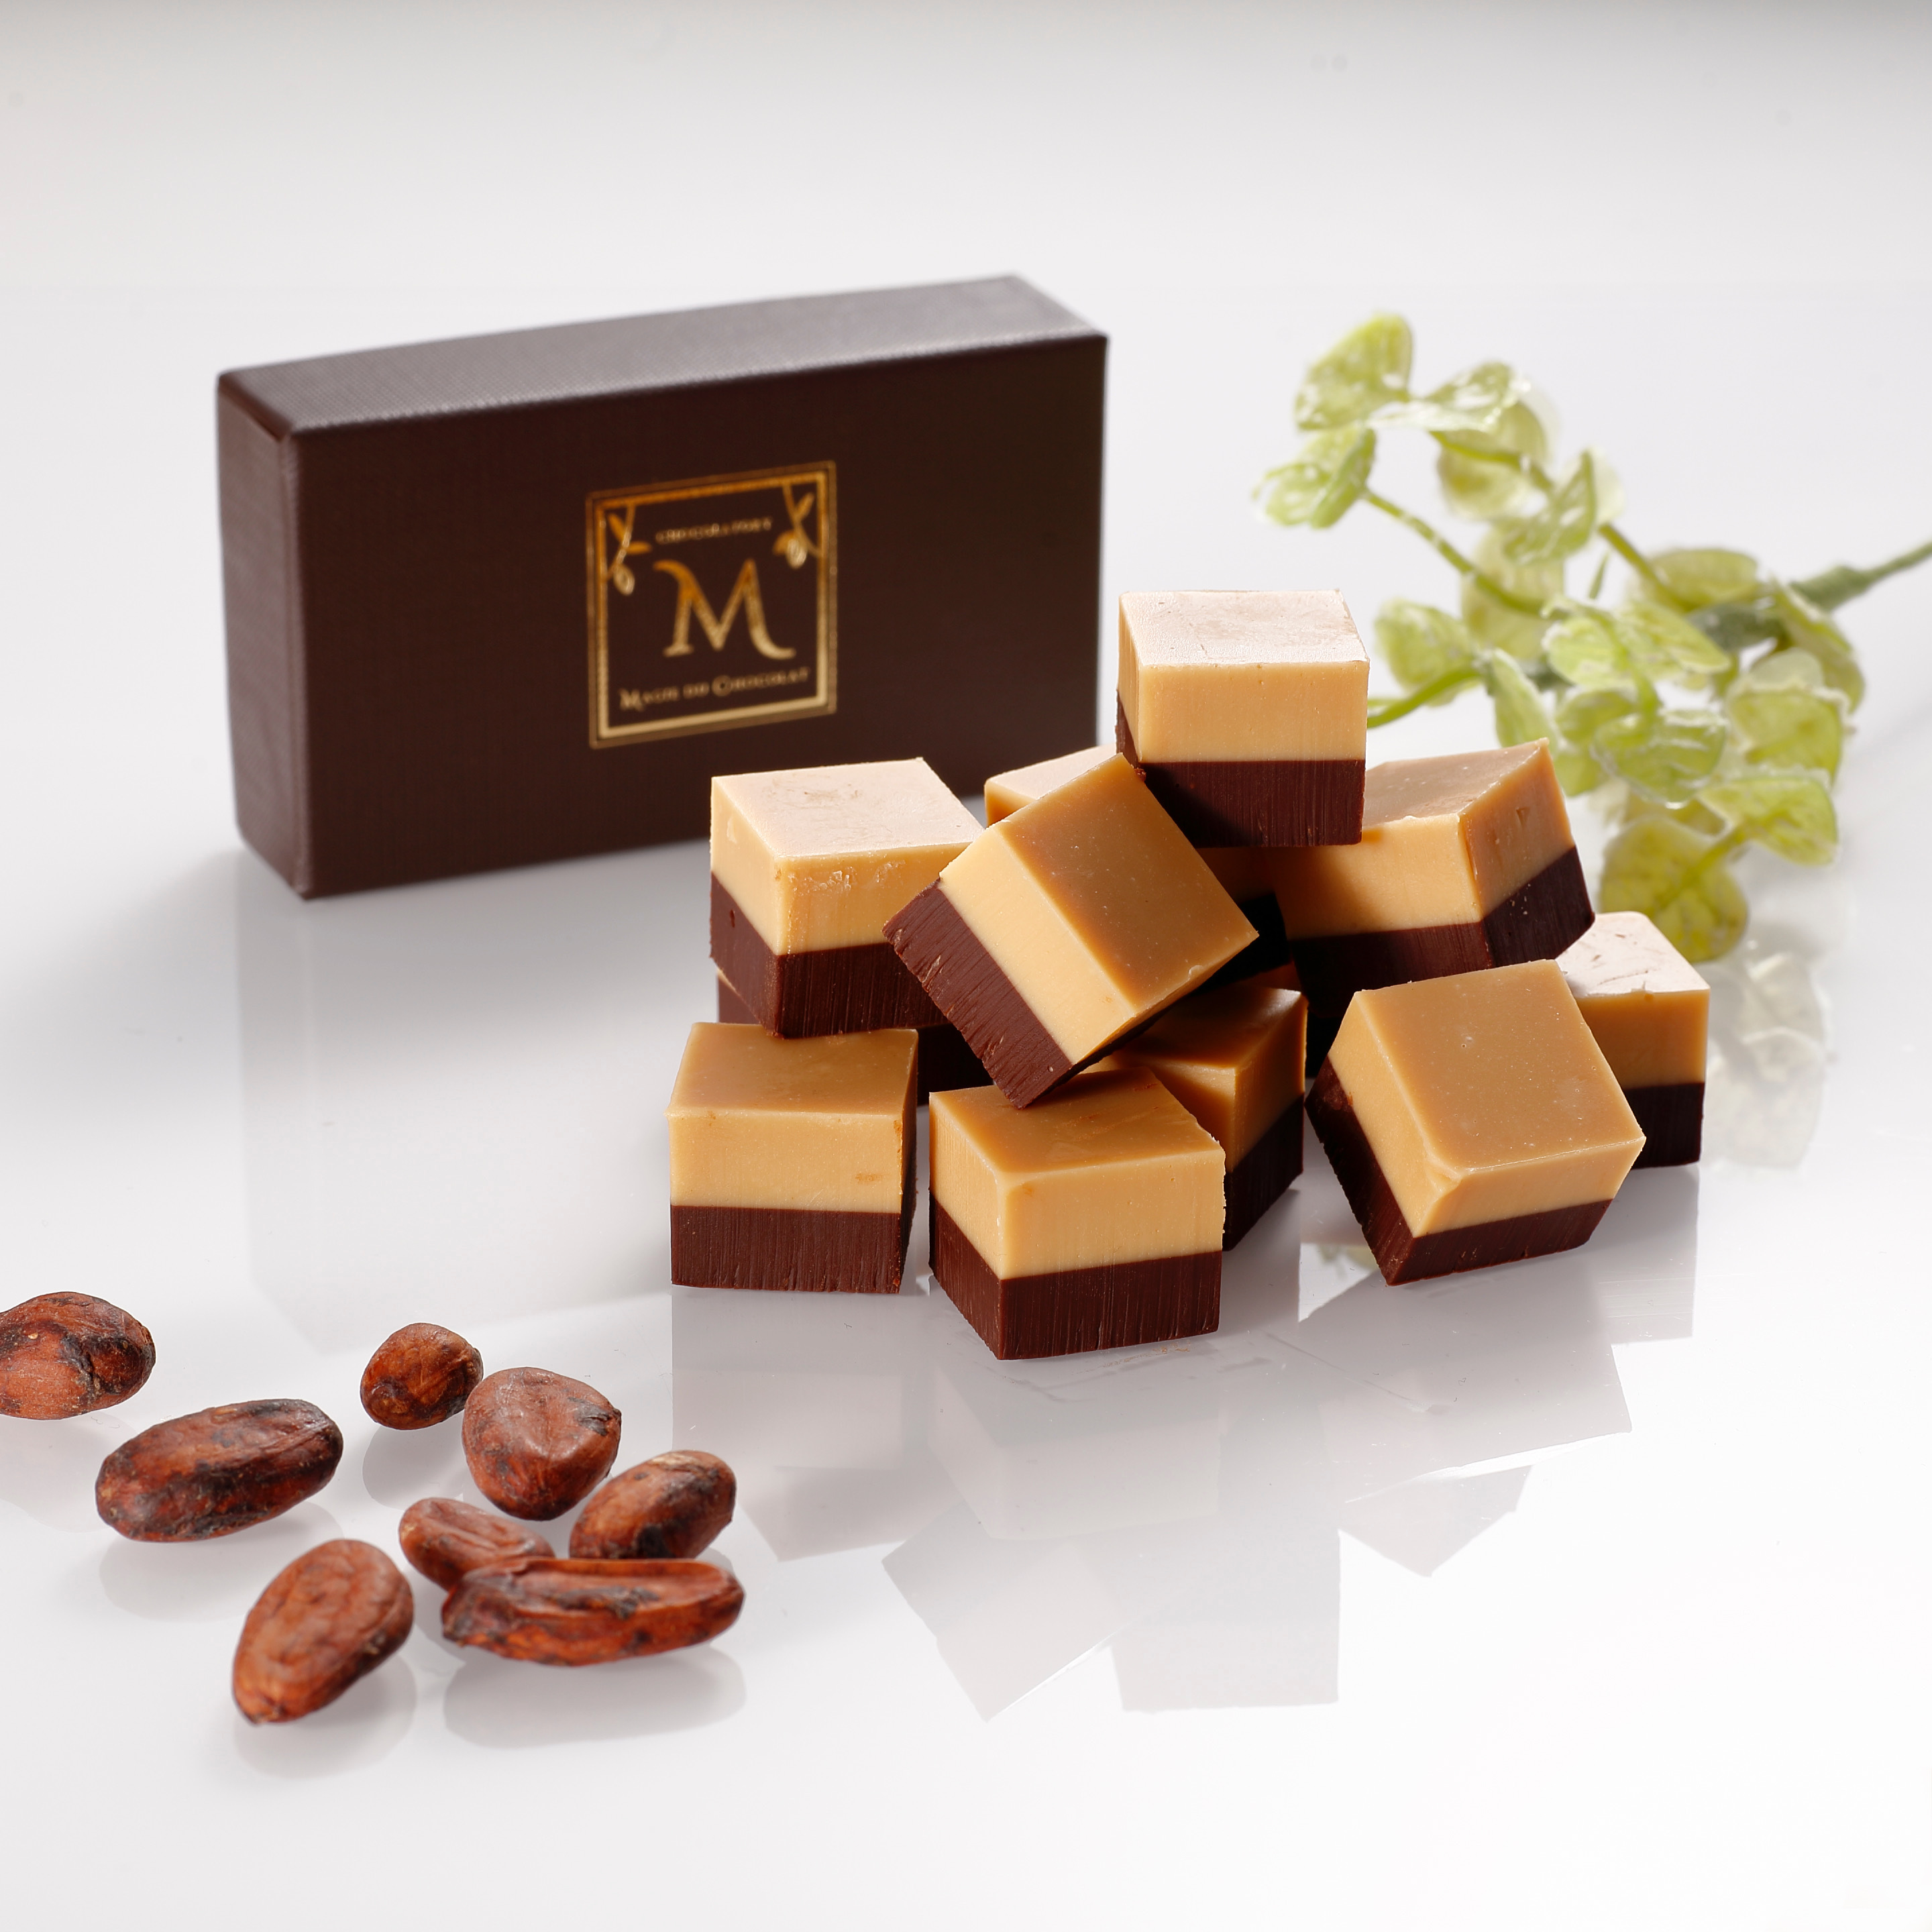 話題沸騰中 ルビーチョコレート を使用した生チョコをマジドゥショコラから新発売 第4のチョコ ルビー と ブロンド を食べ比べできるのは当店ならでは 株式会社マジデマティエールのプレスリリース